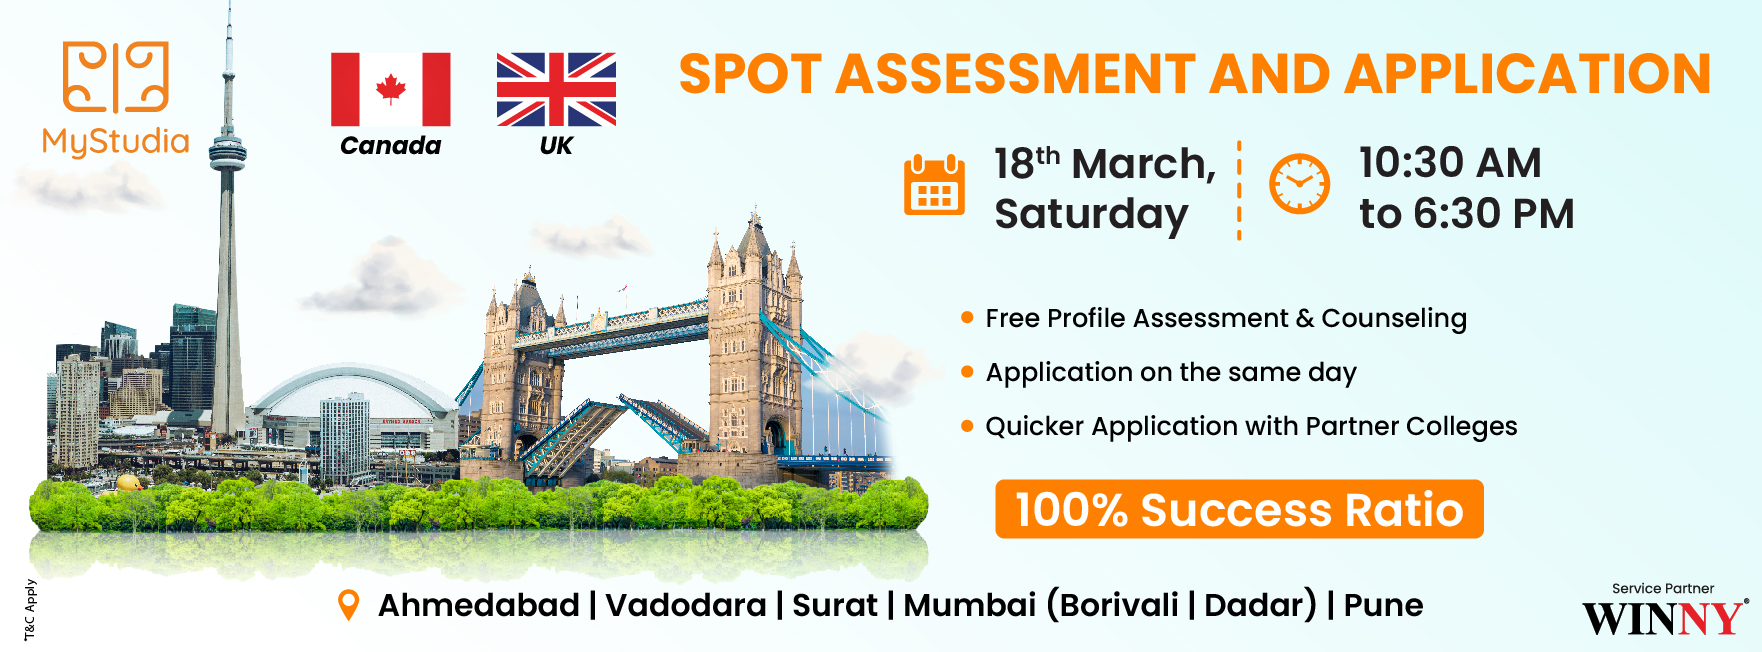 Study Abroad Seminar for Canada and UK at Pune, Pune, Maharashtra, India